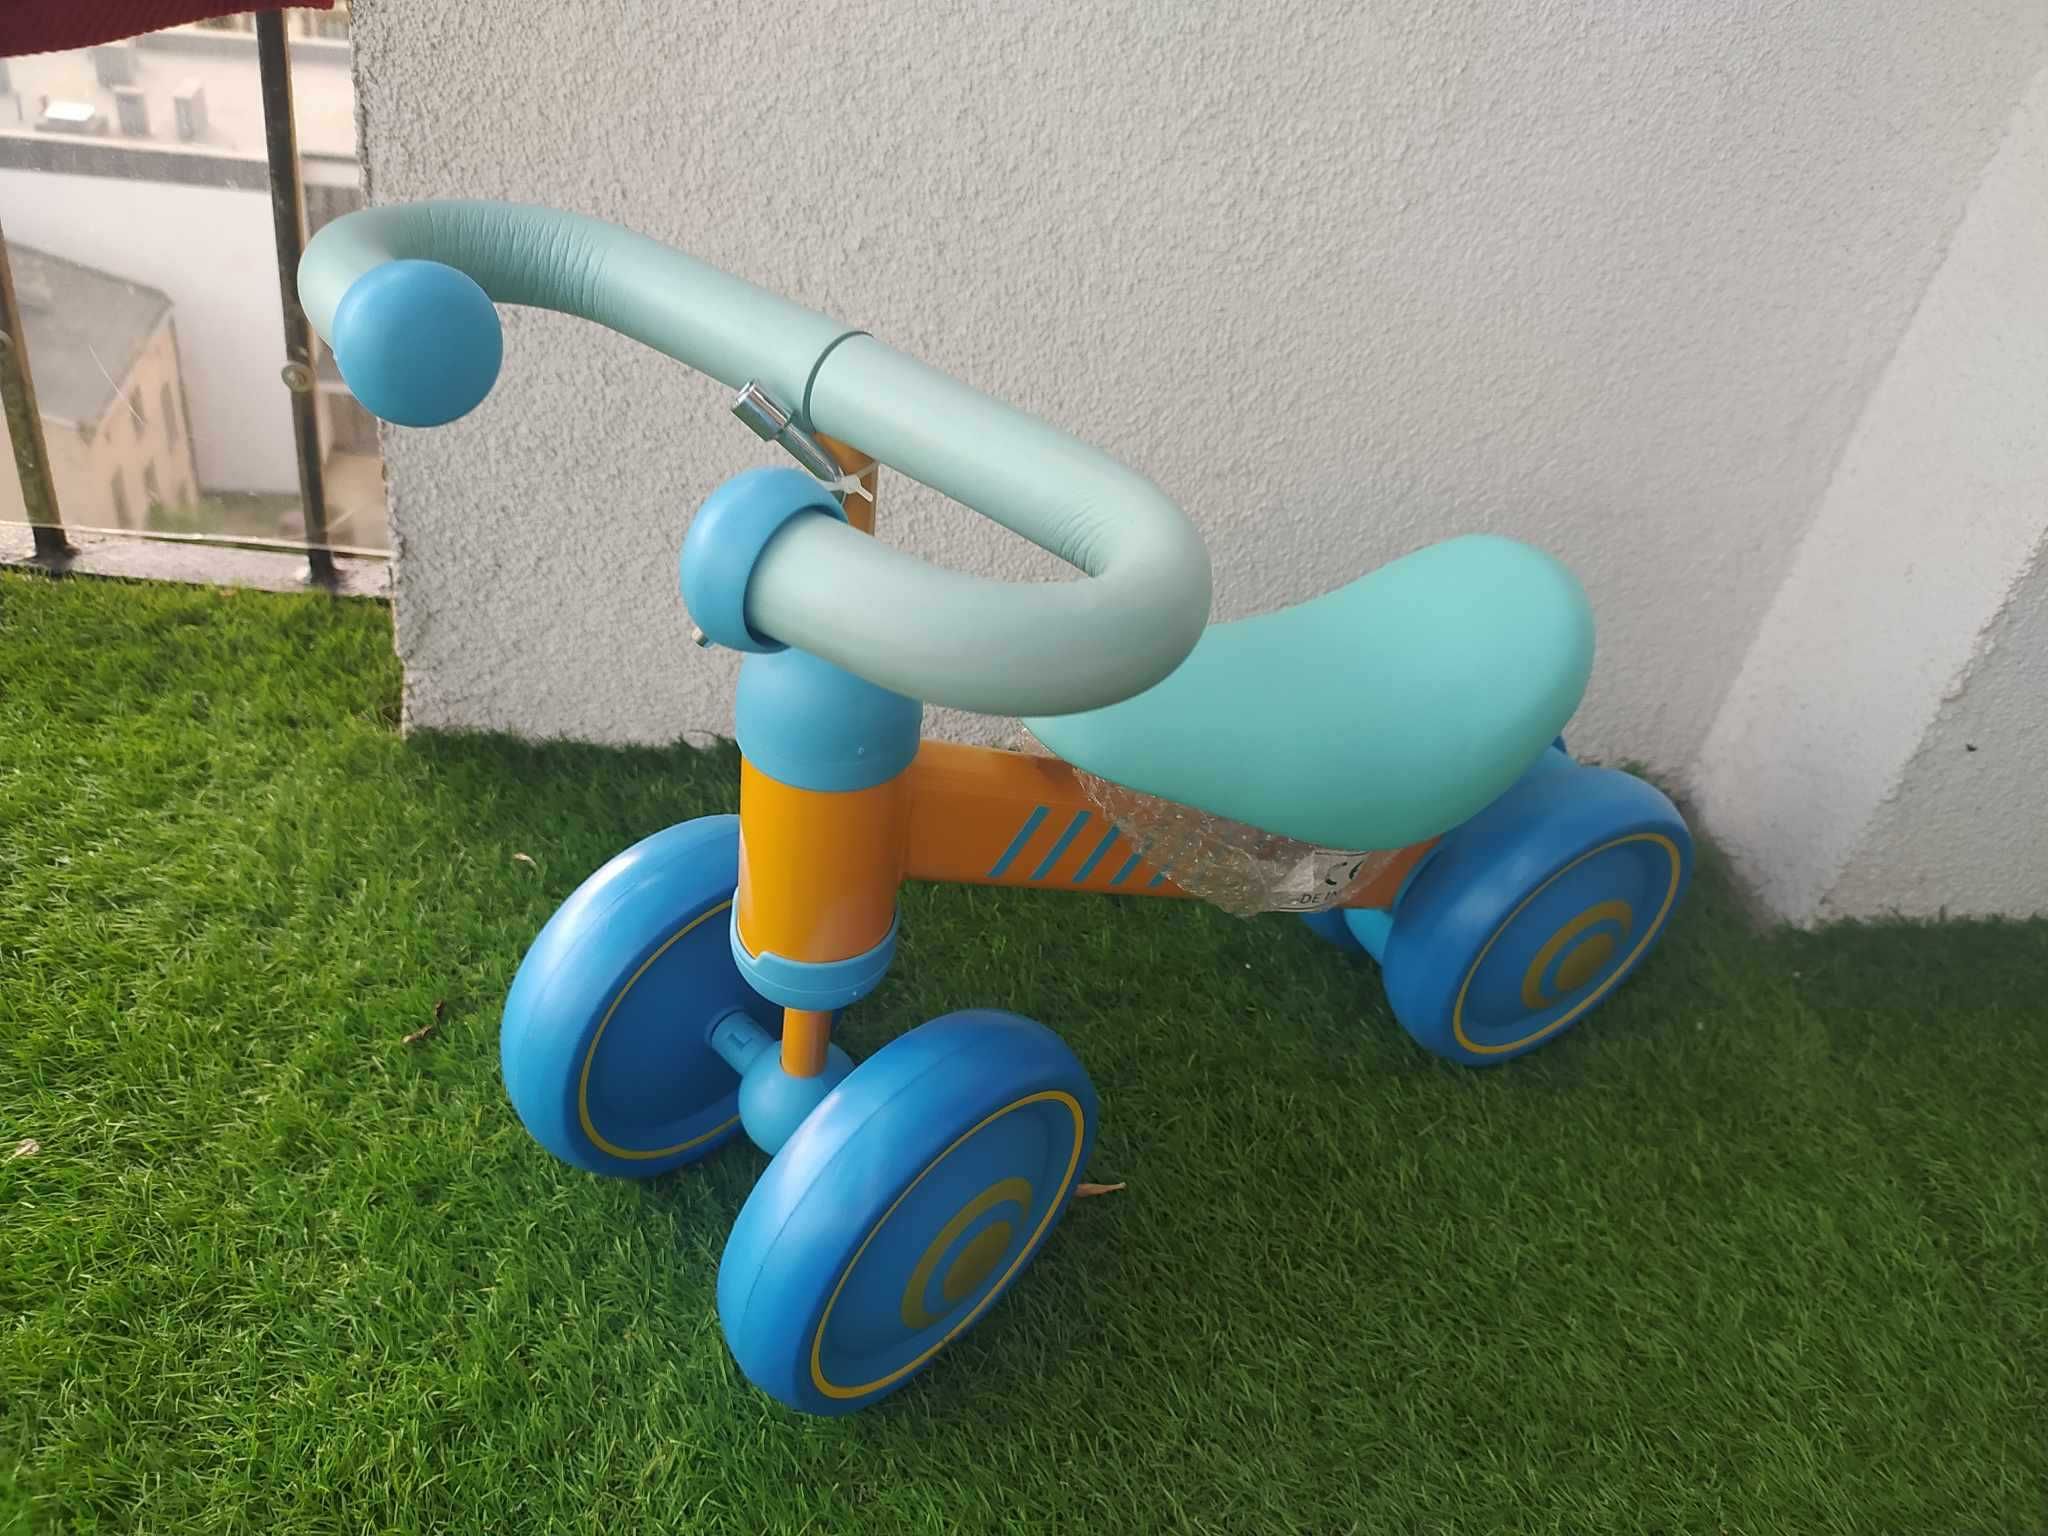 Rowerek biegowy trójkołowy Niebieski+ żółty